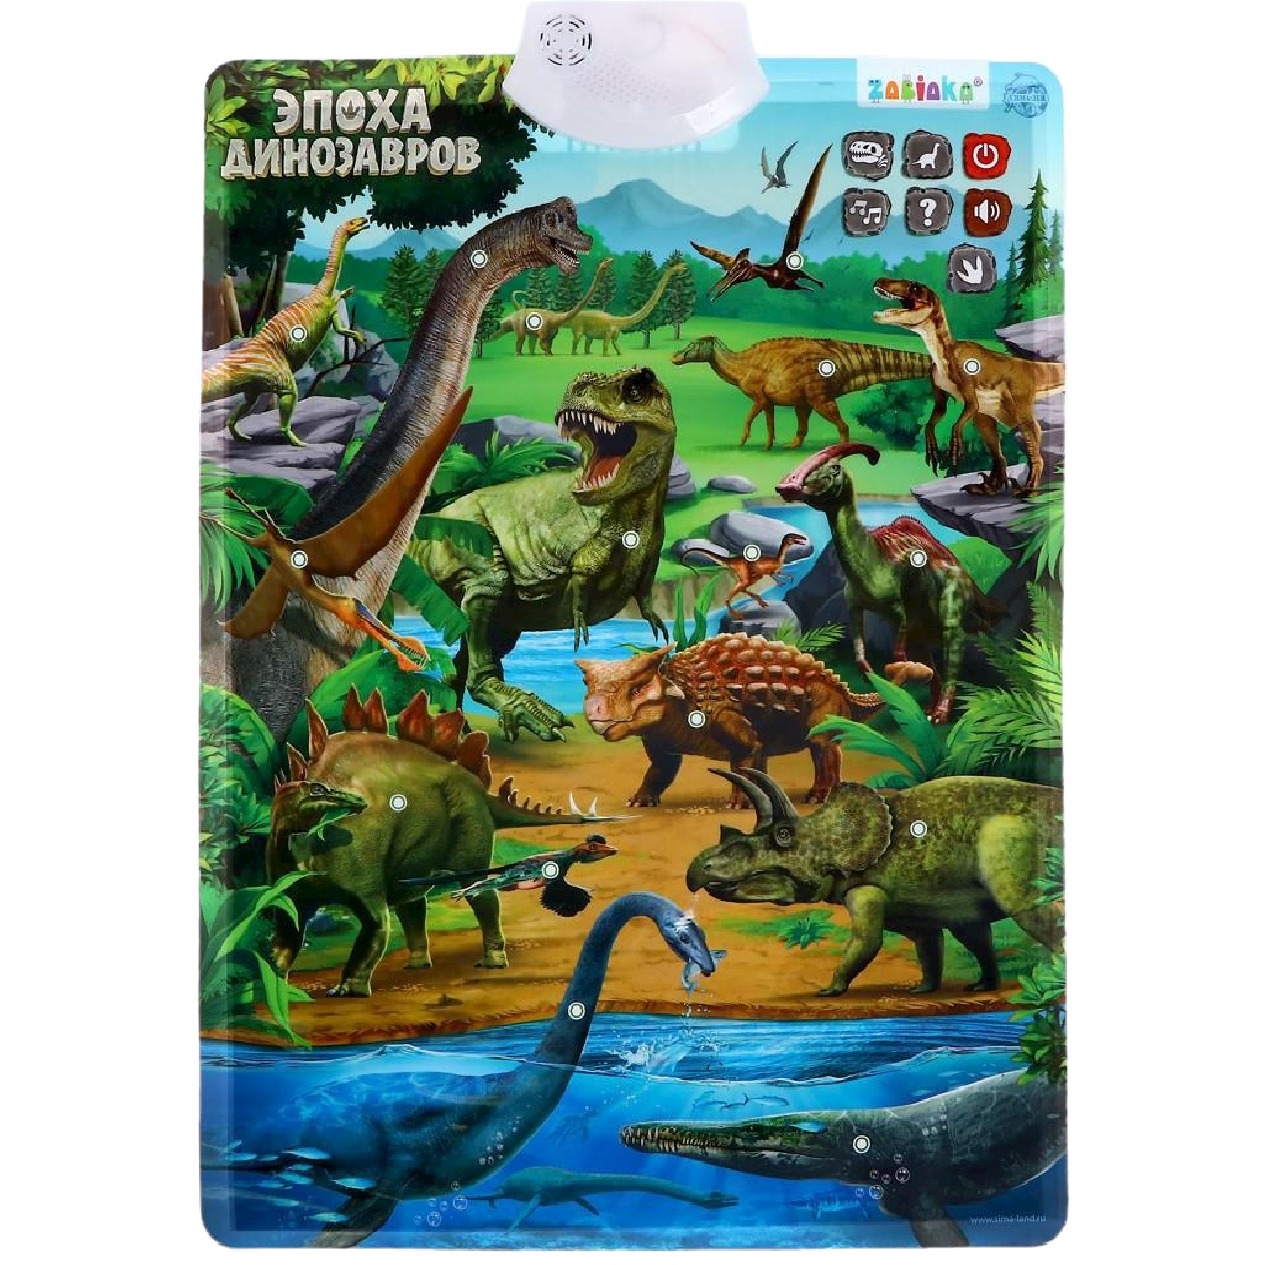 Обучающий плакат Zabiaka "В мире динозавров"